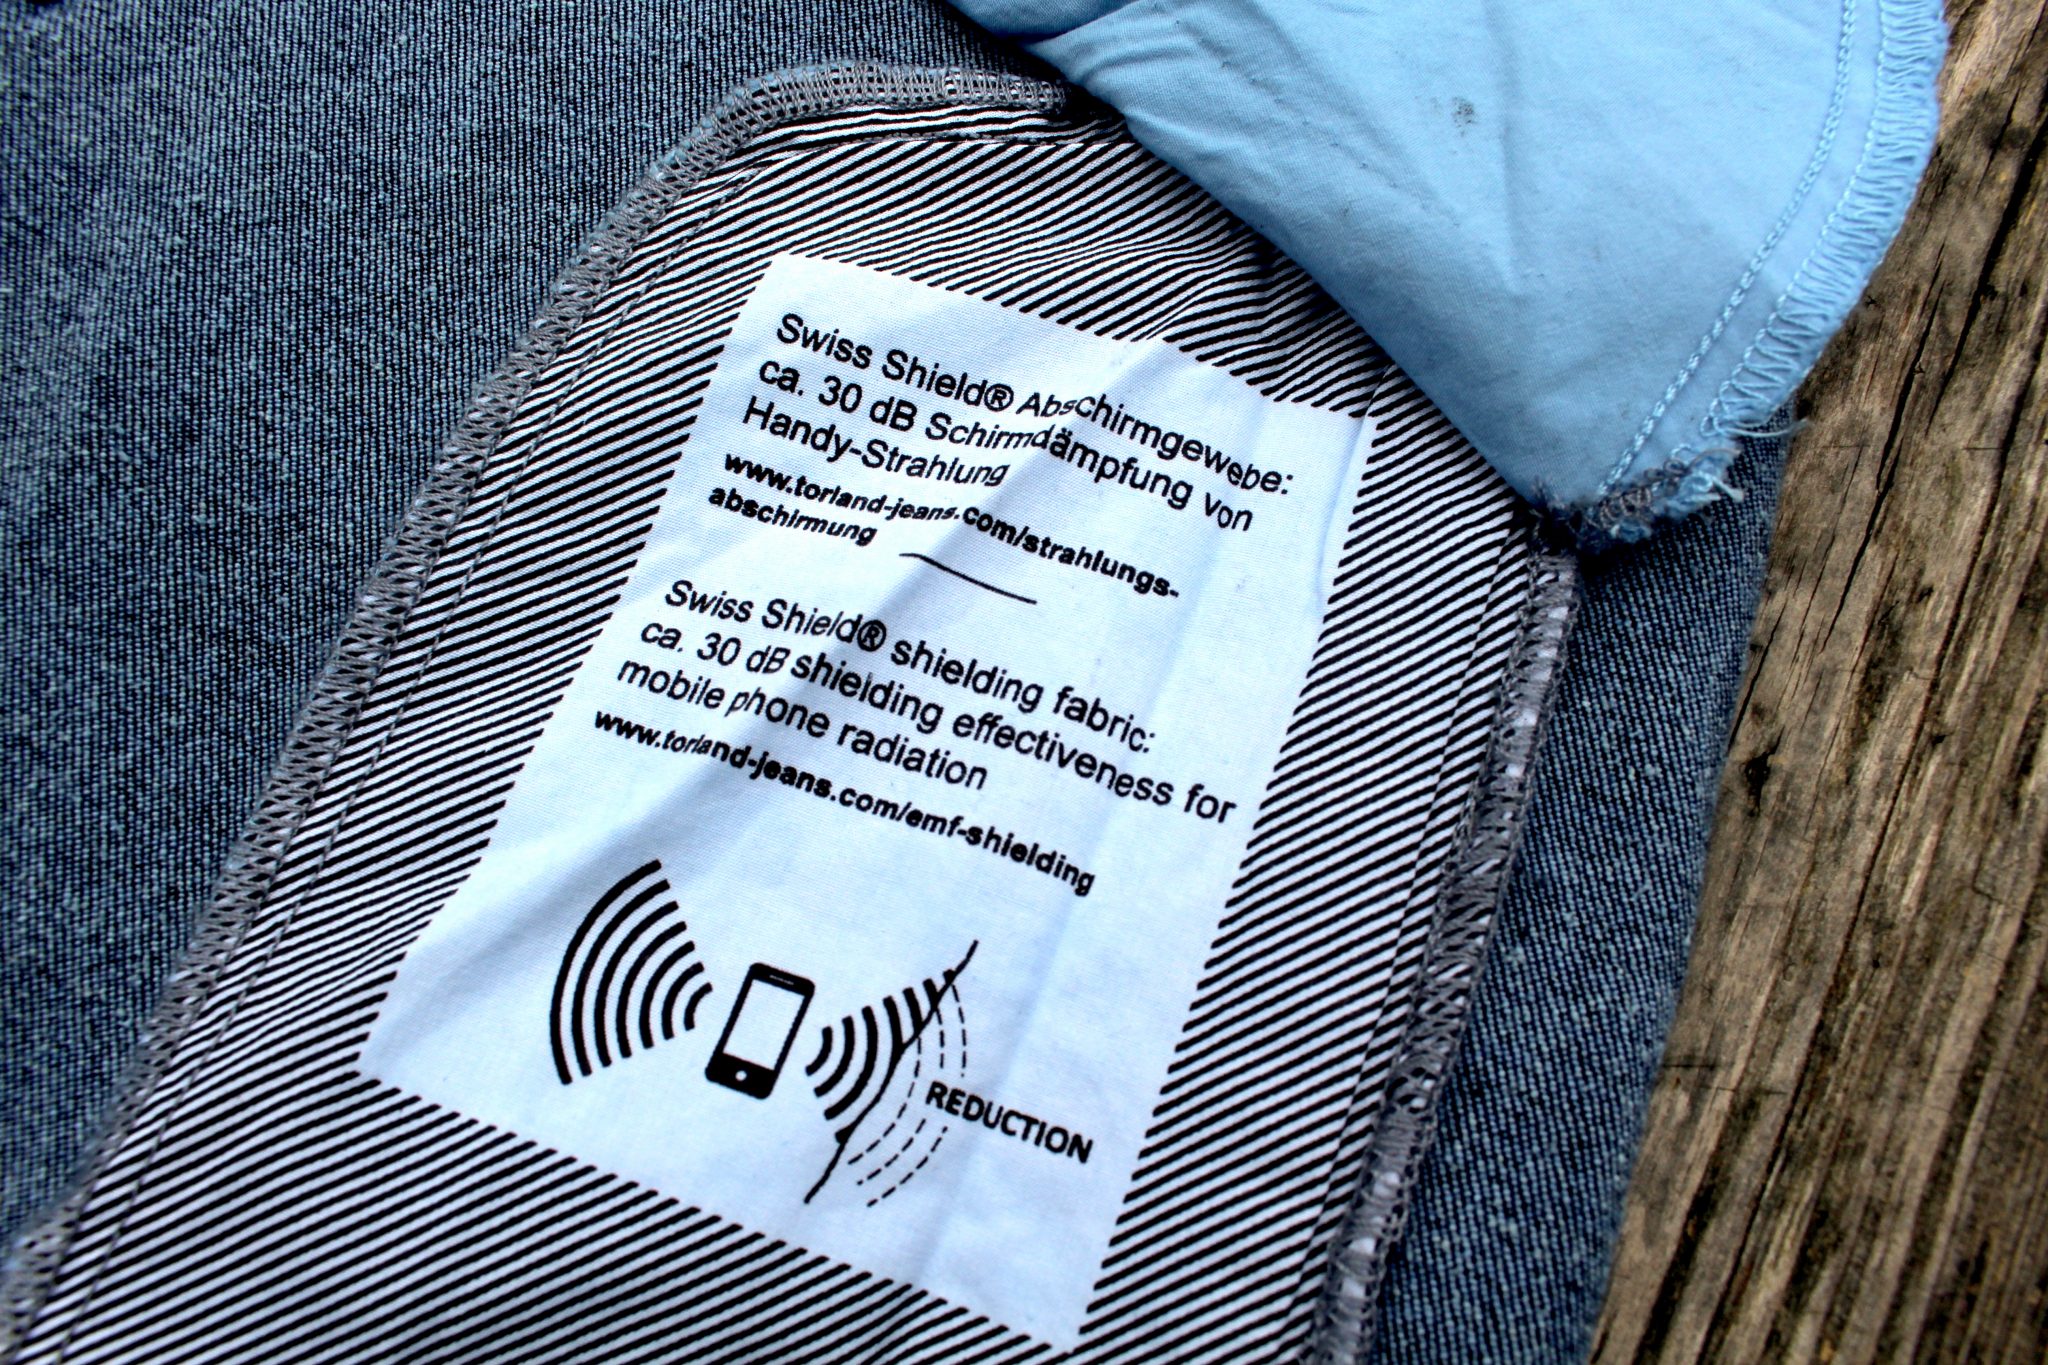 Torland macht neue Jeans aus alten Jeans, aus PET-Flaschen und Biobaumwolle